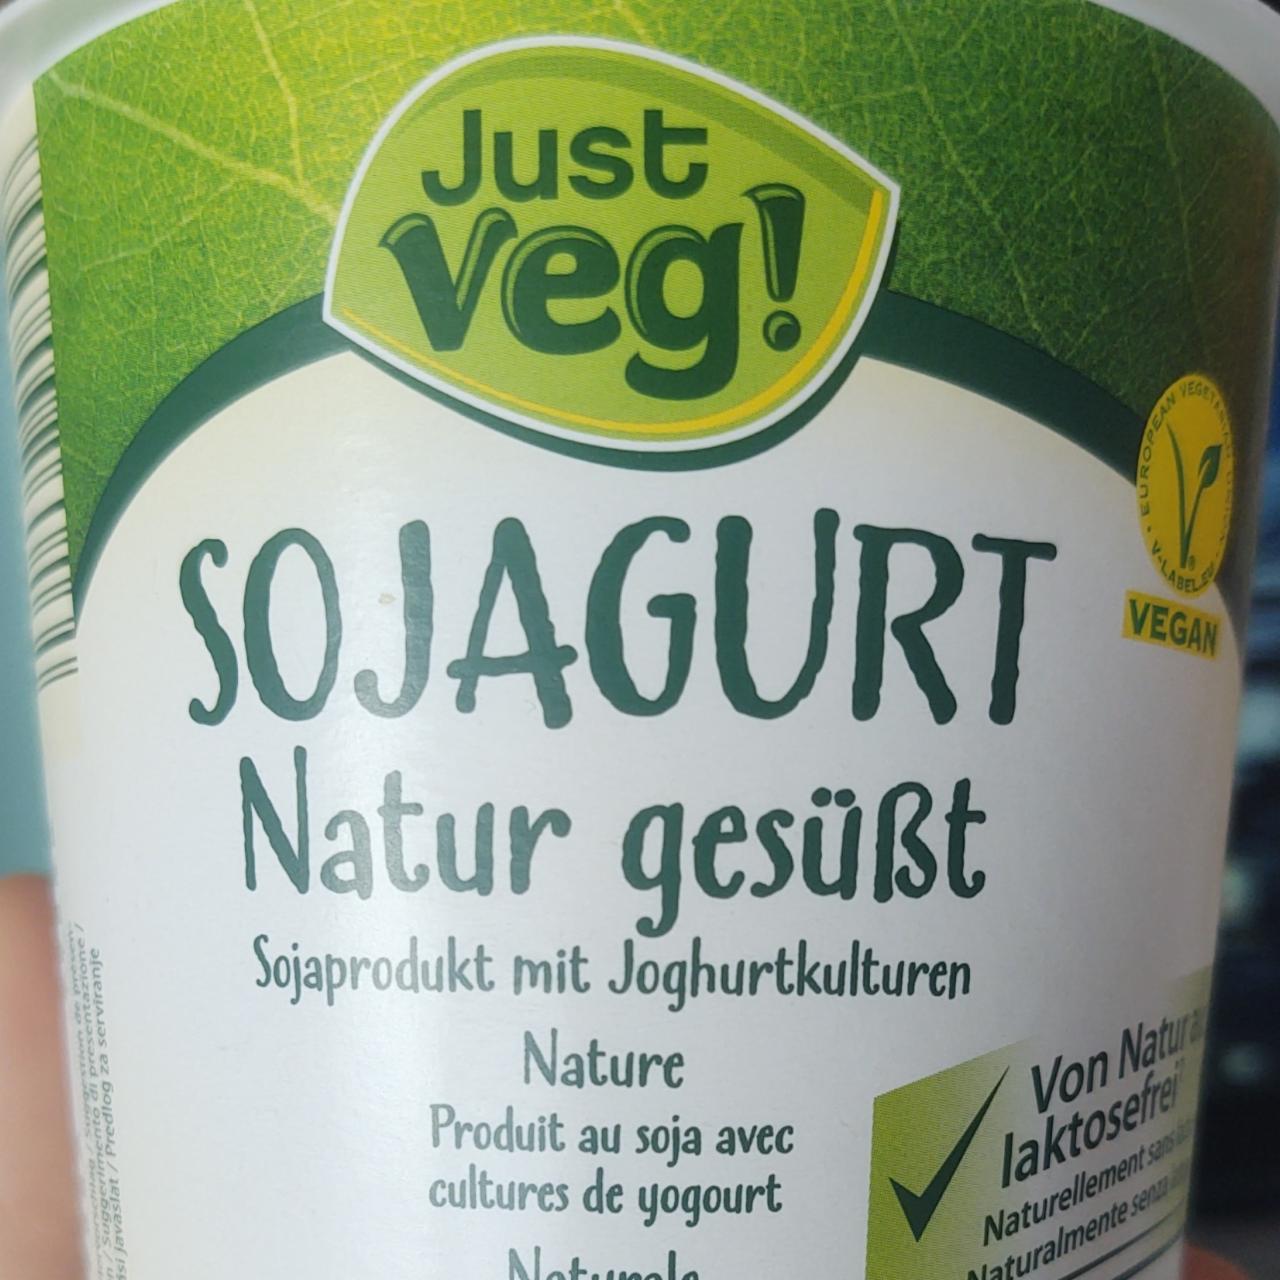 Fotografie - Sojagurt Natur Gesüßt Just Veg!